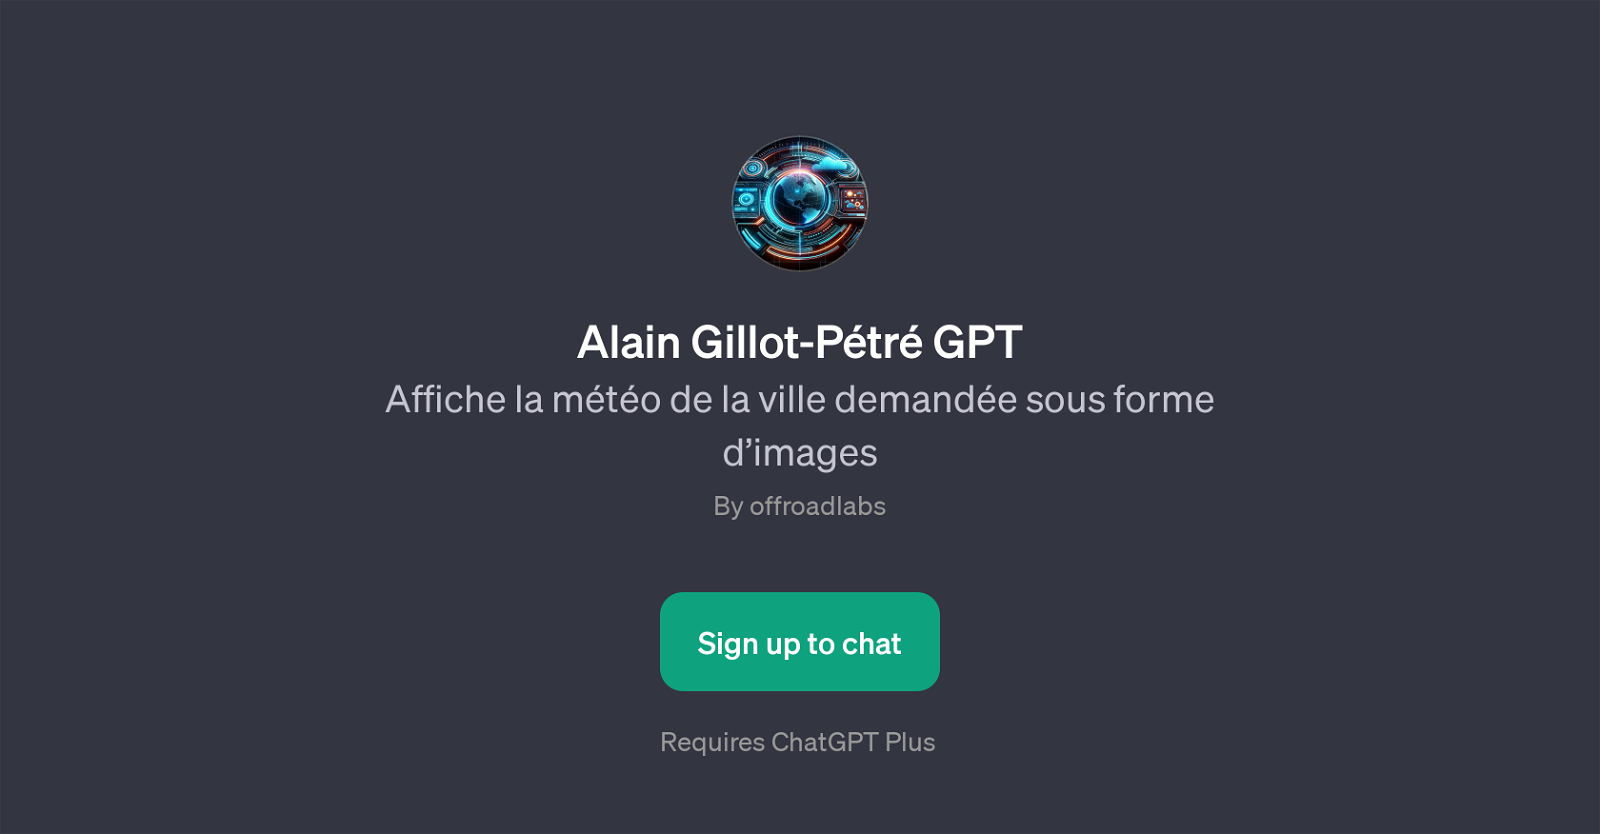 Alain Gillot-Ptr GPT website